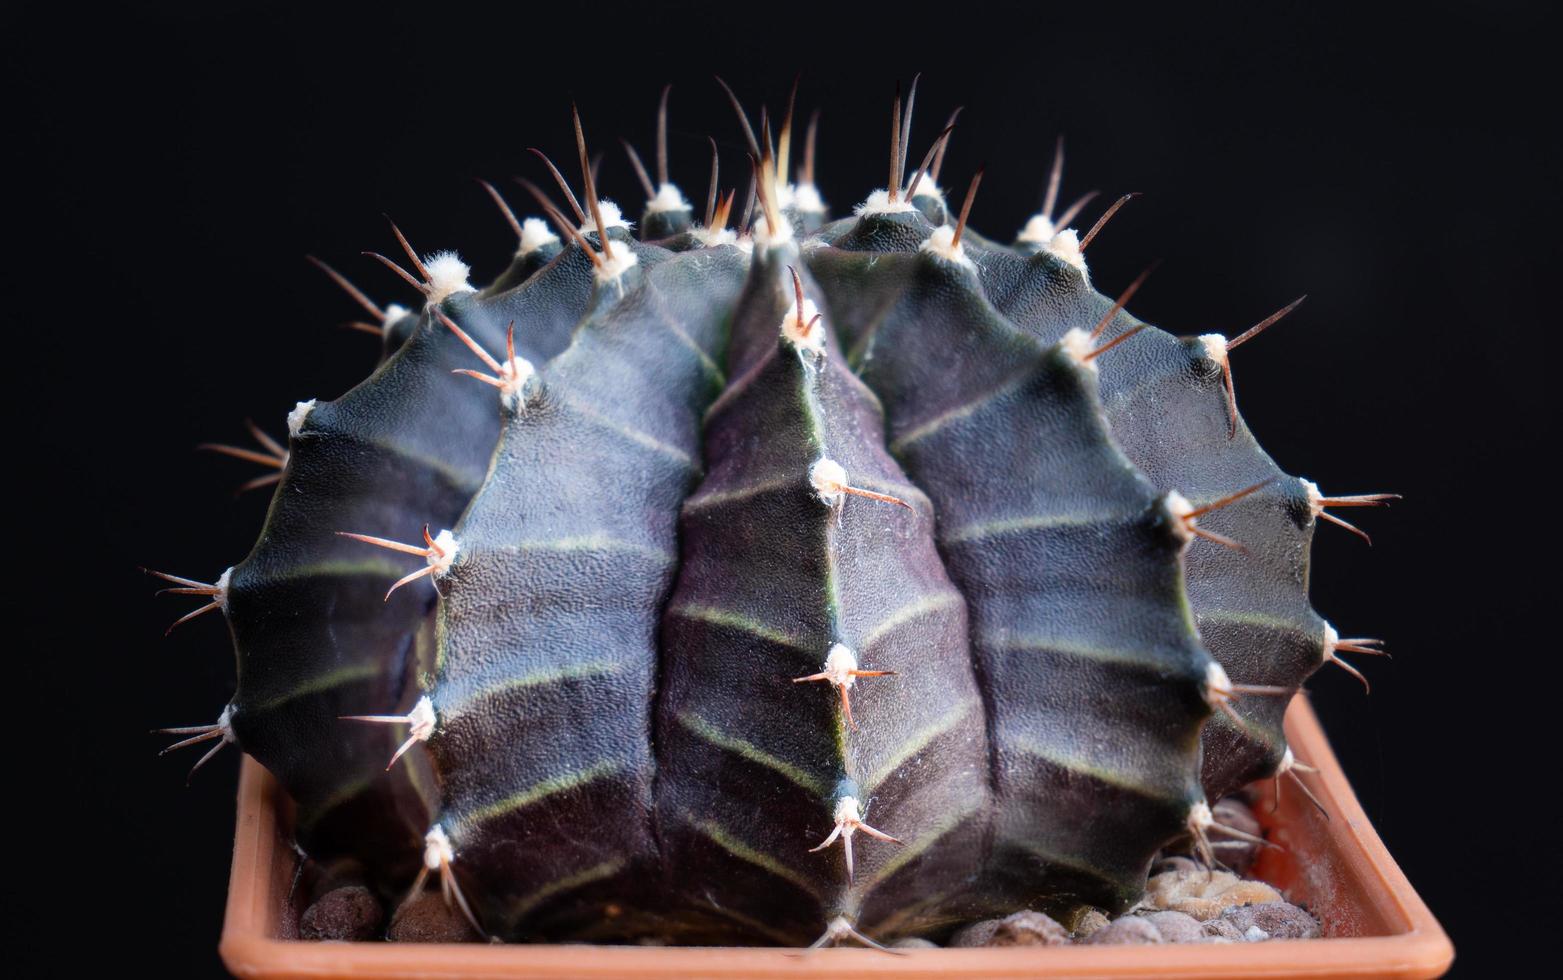 nom de mini cactus gymnocalycium. fond noir isolé. tourné en studio. fleurs d'un cactus ou de cactus. bouquet de cactus dans un petit pot. serres pour faire pousser des plantes dans les maisons. tournage en studio photo